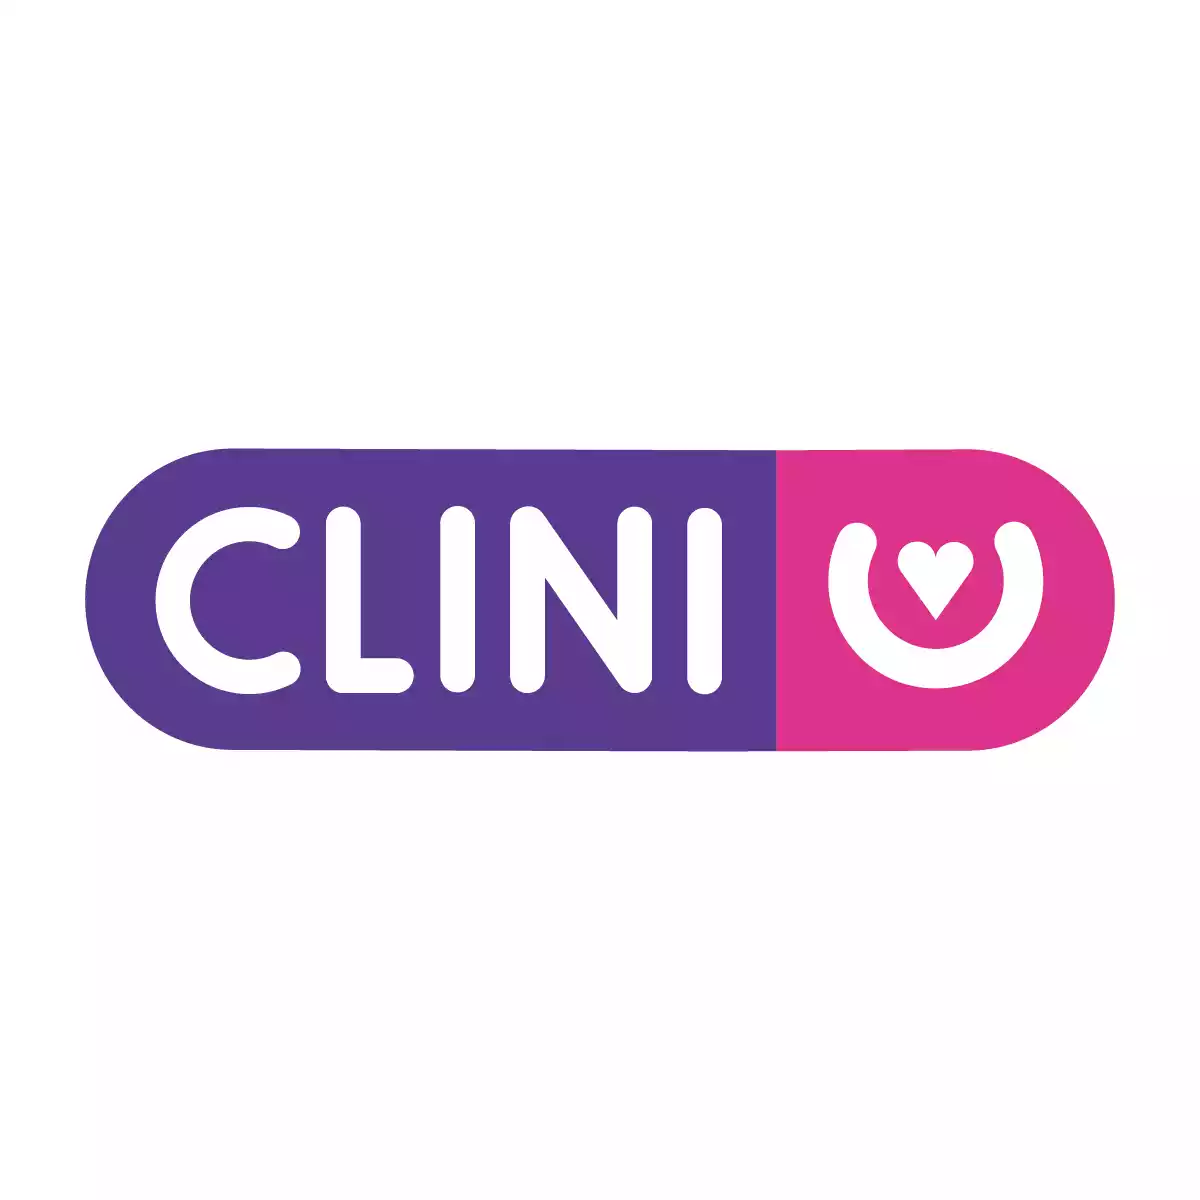 Logo Clini Convenio